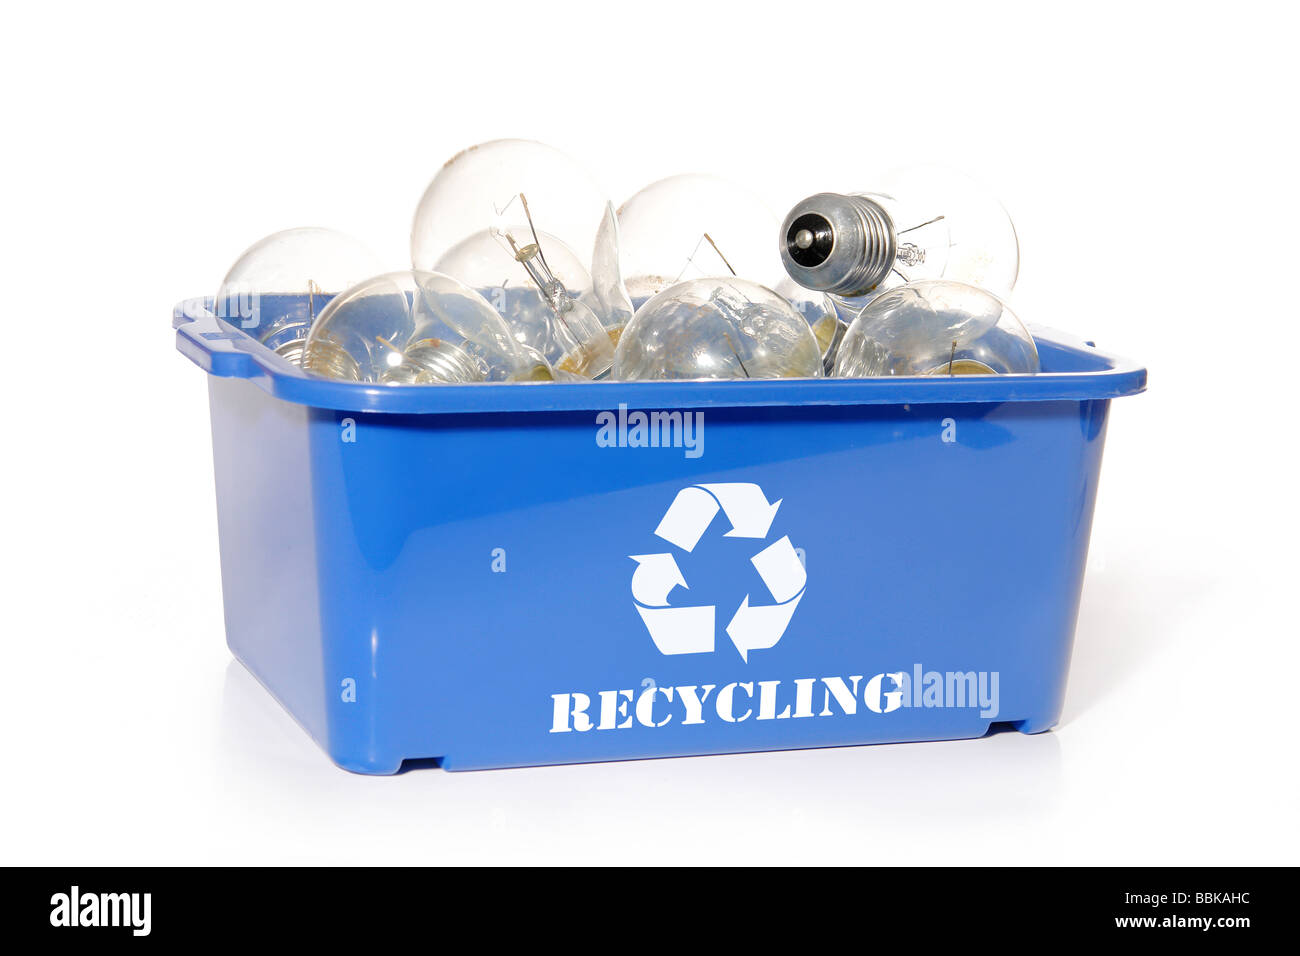 Ampoules électriques utilisées dans des conteneurs de recyclage bleu sur fond blanc Banque D'Images